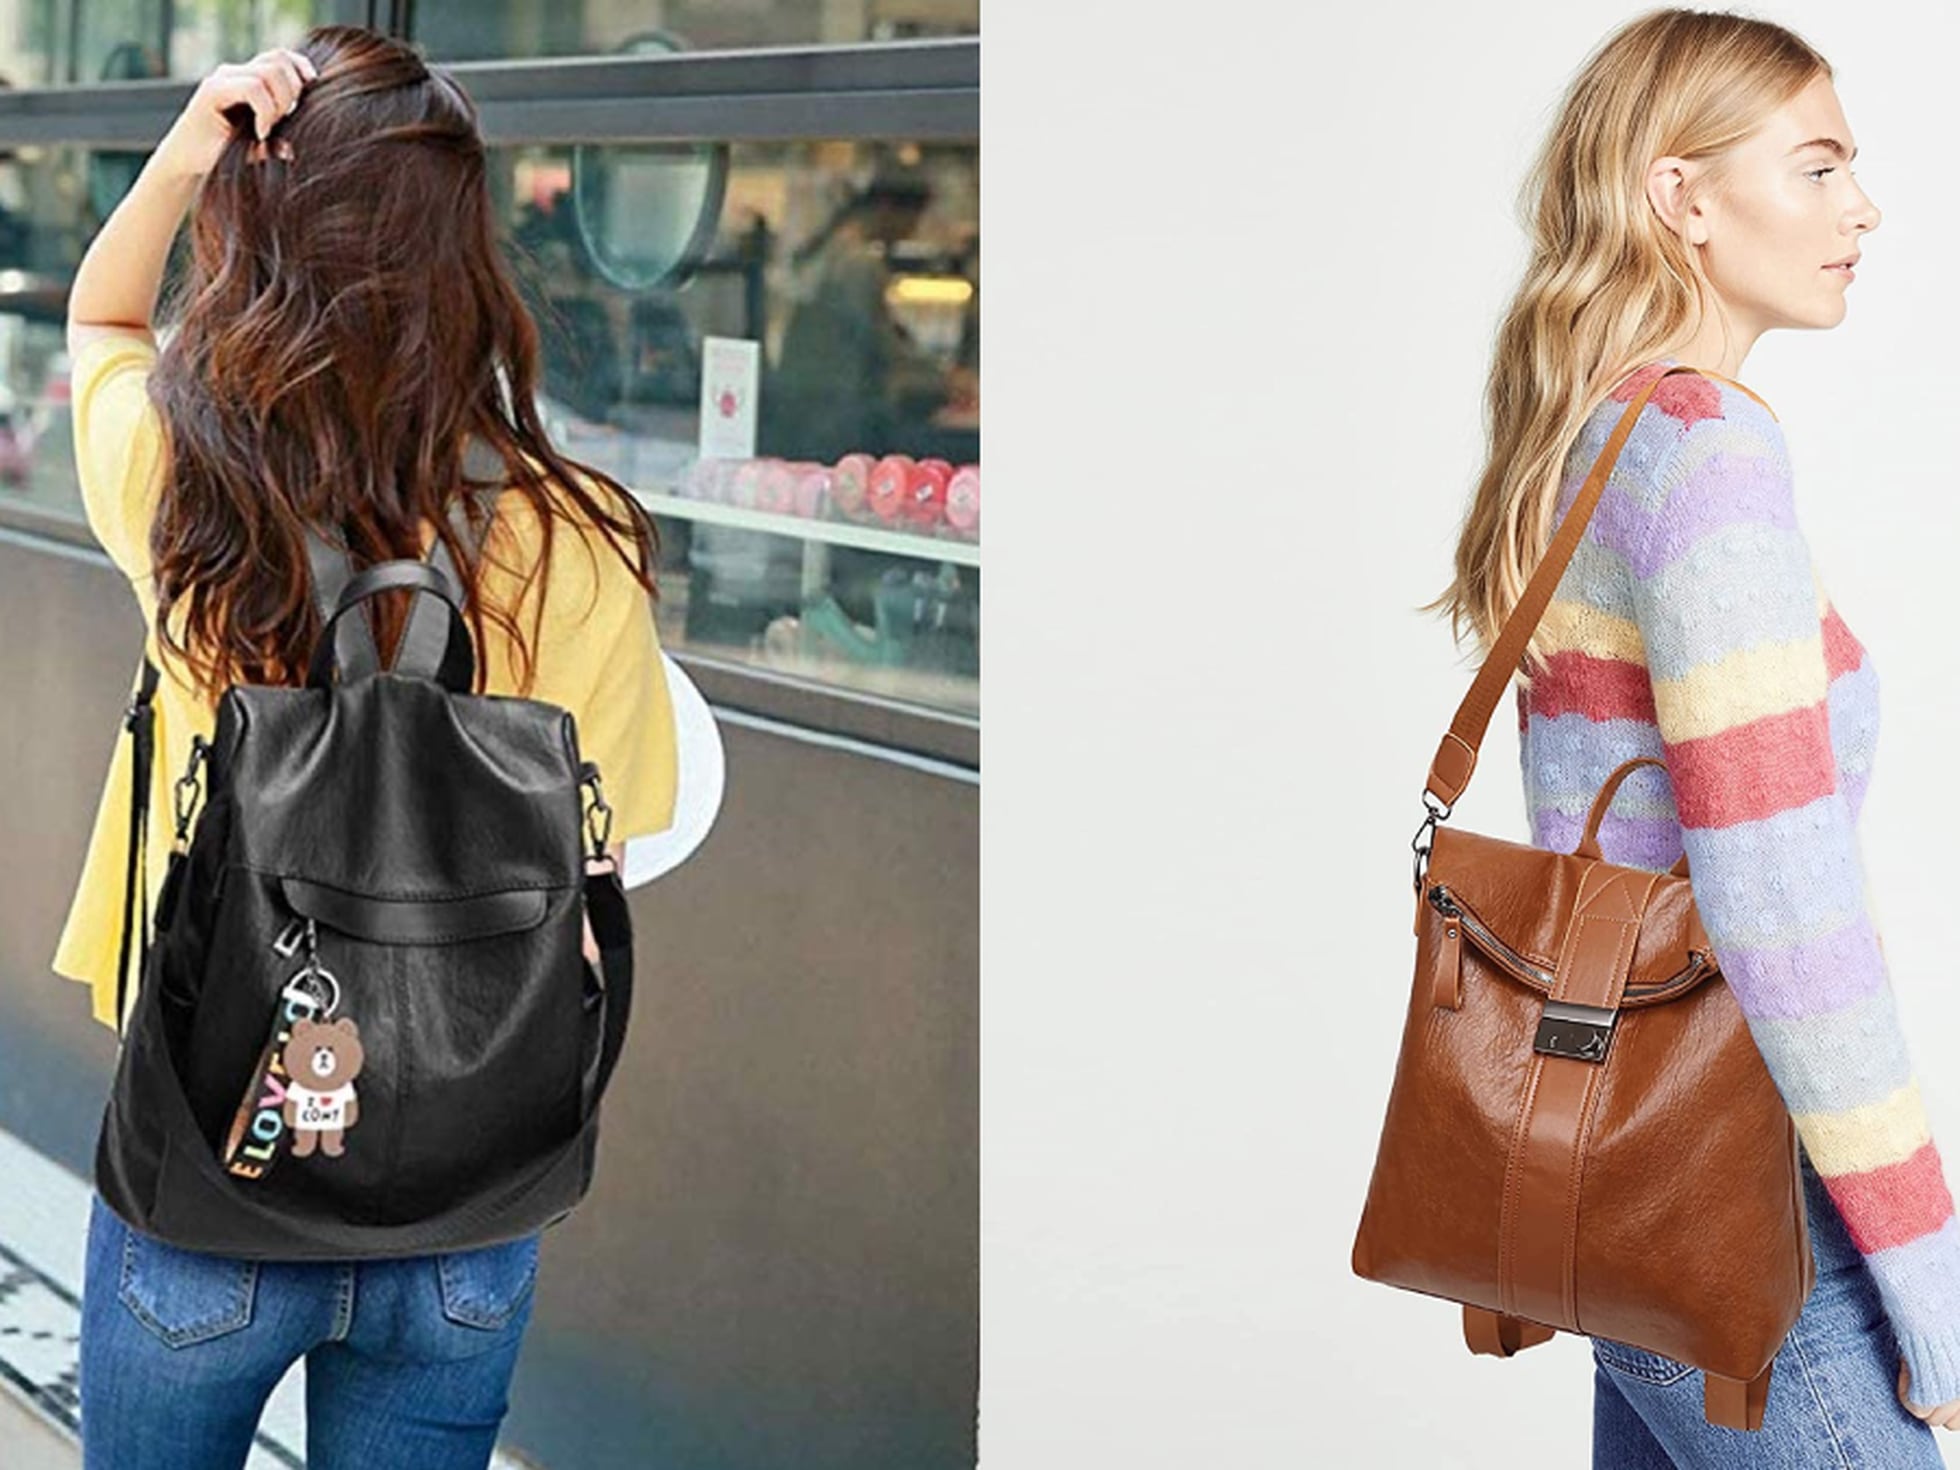 Así es la mochila para mujer más vendida en Amazon: antirrobo, de cuero y disponible en una veintena colores Escaparate: compras y ofertas | EL PAÍS